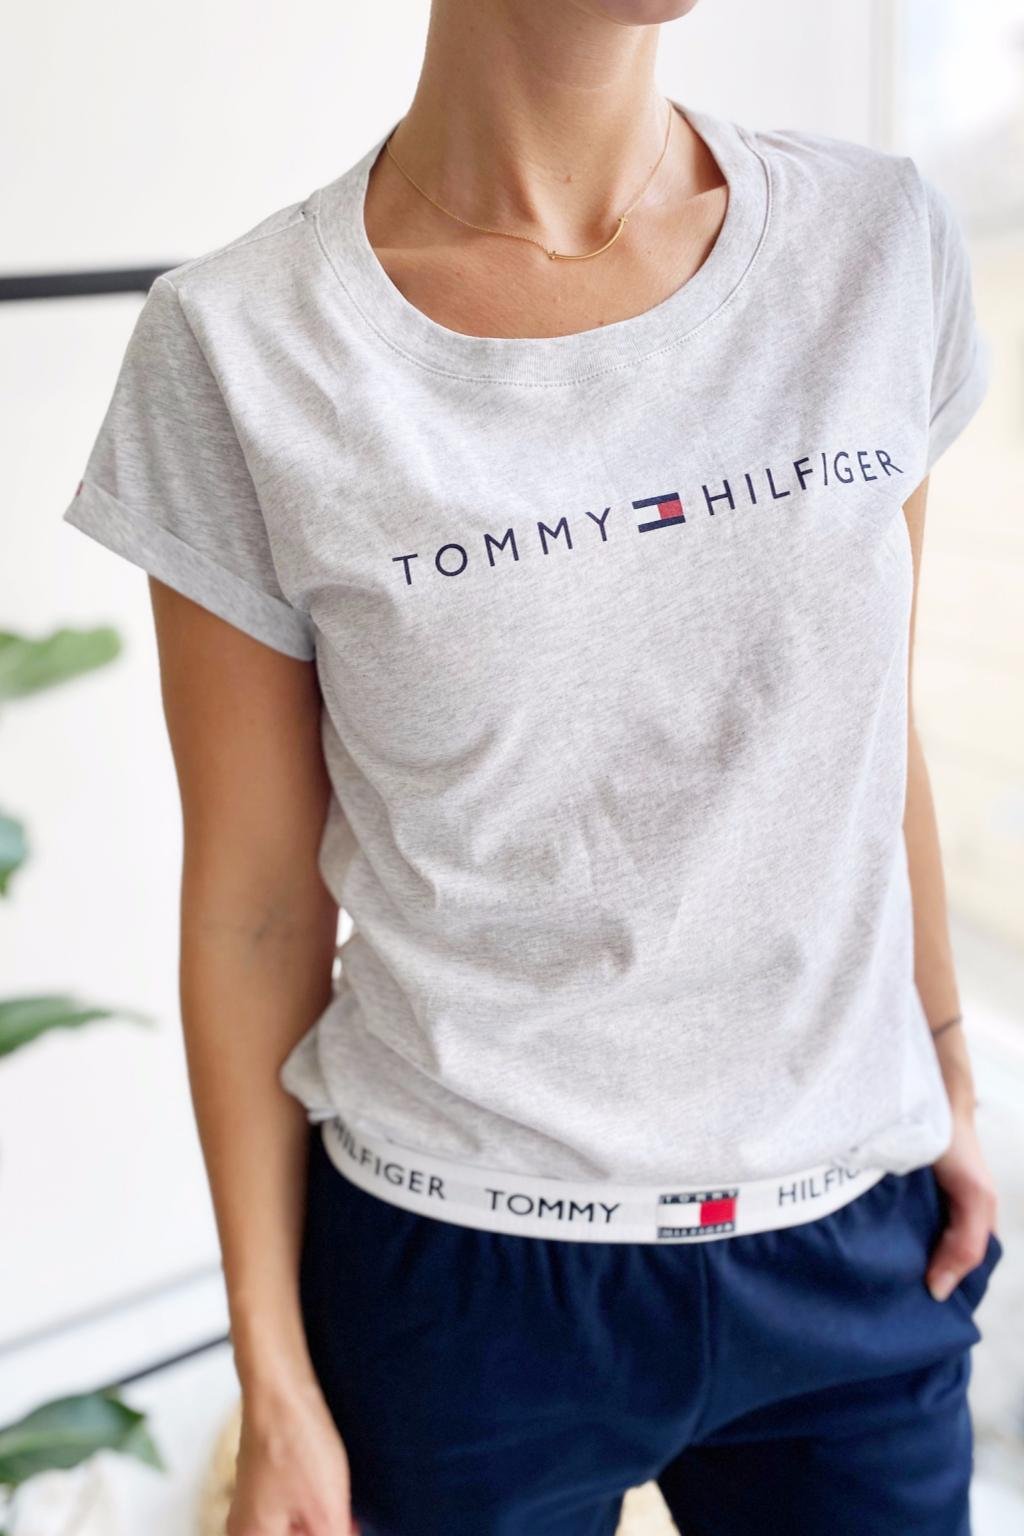 Tommy Hilfiger Original tričko dámské - šedé - BePink.cz